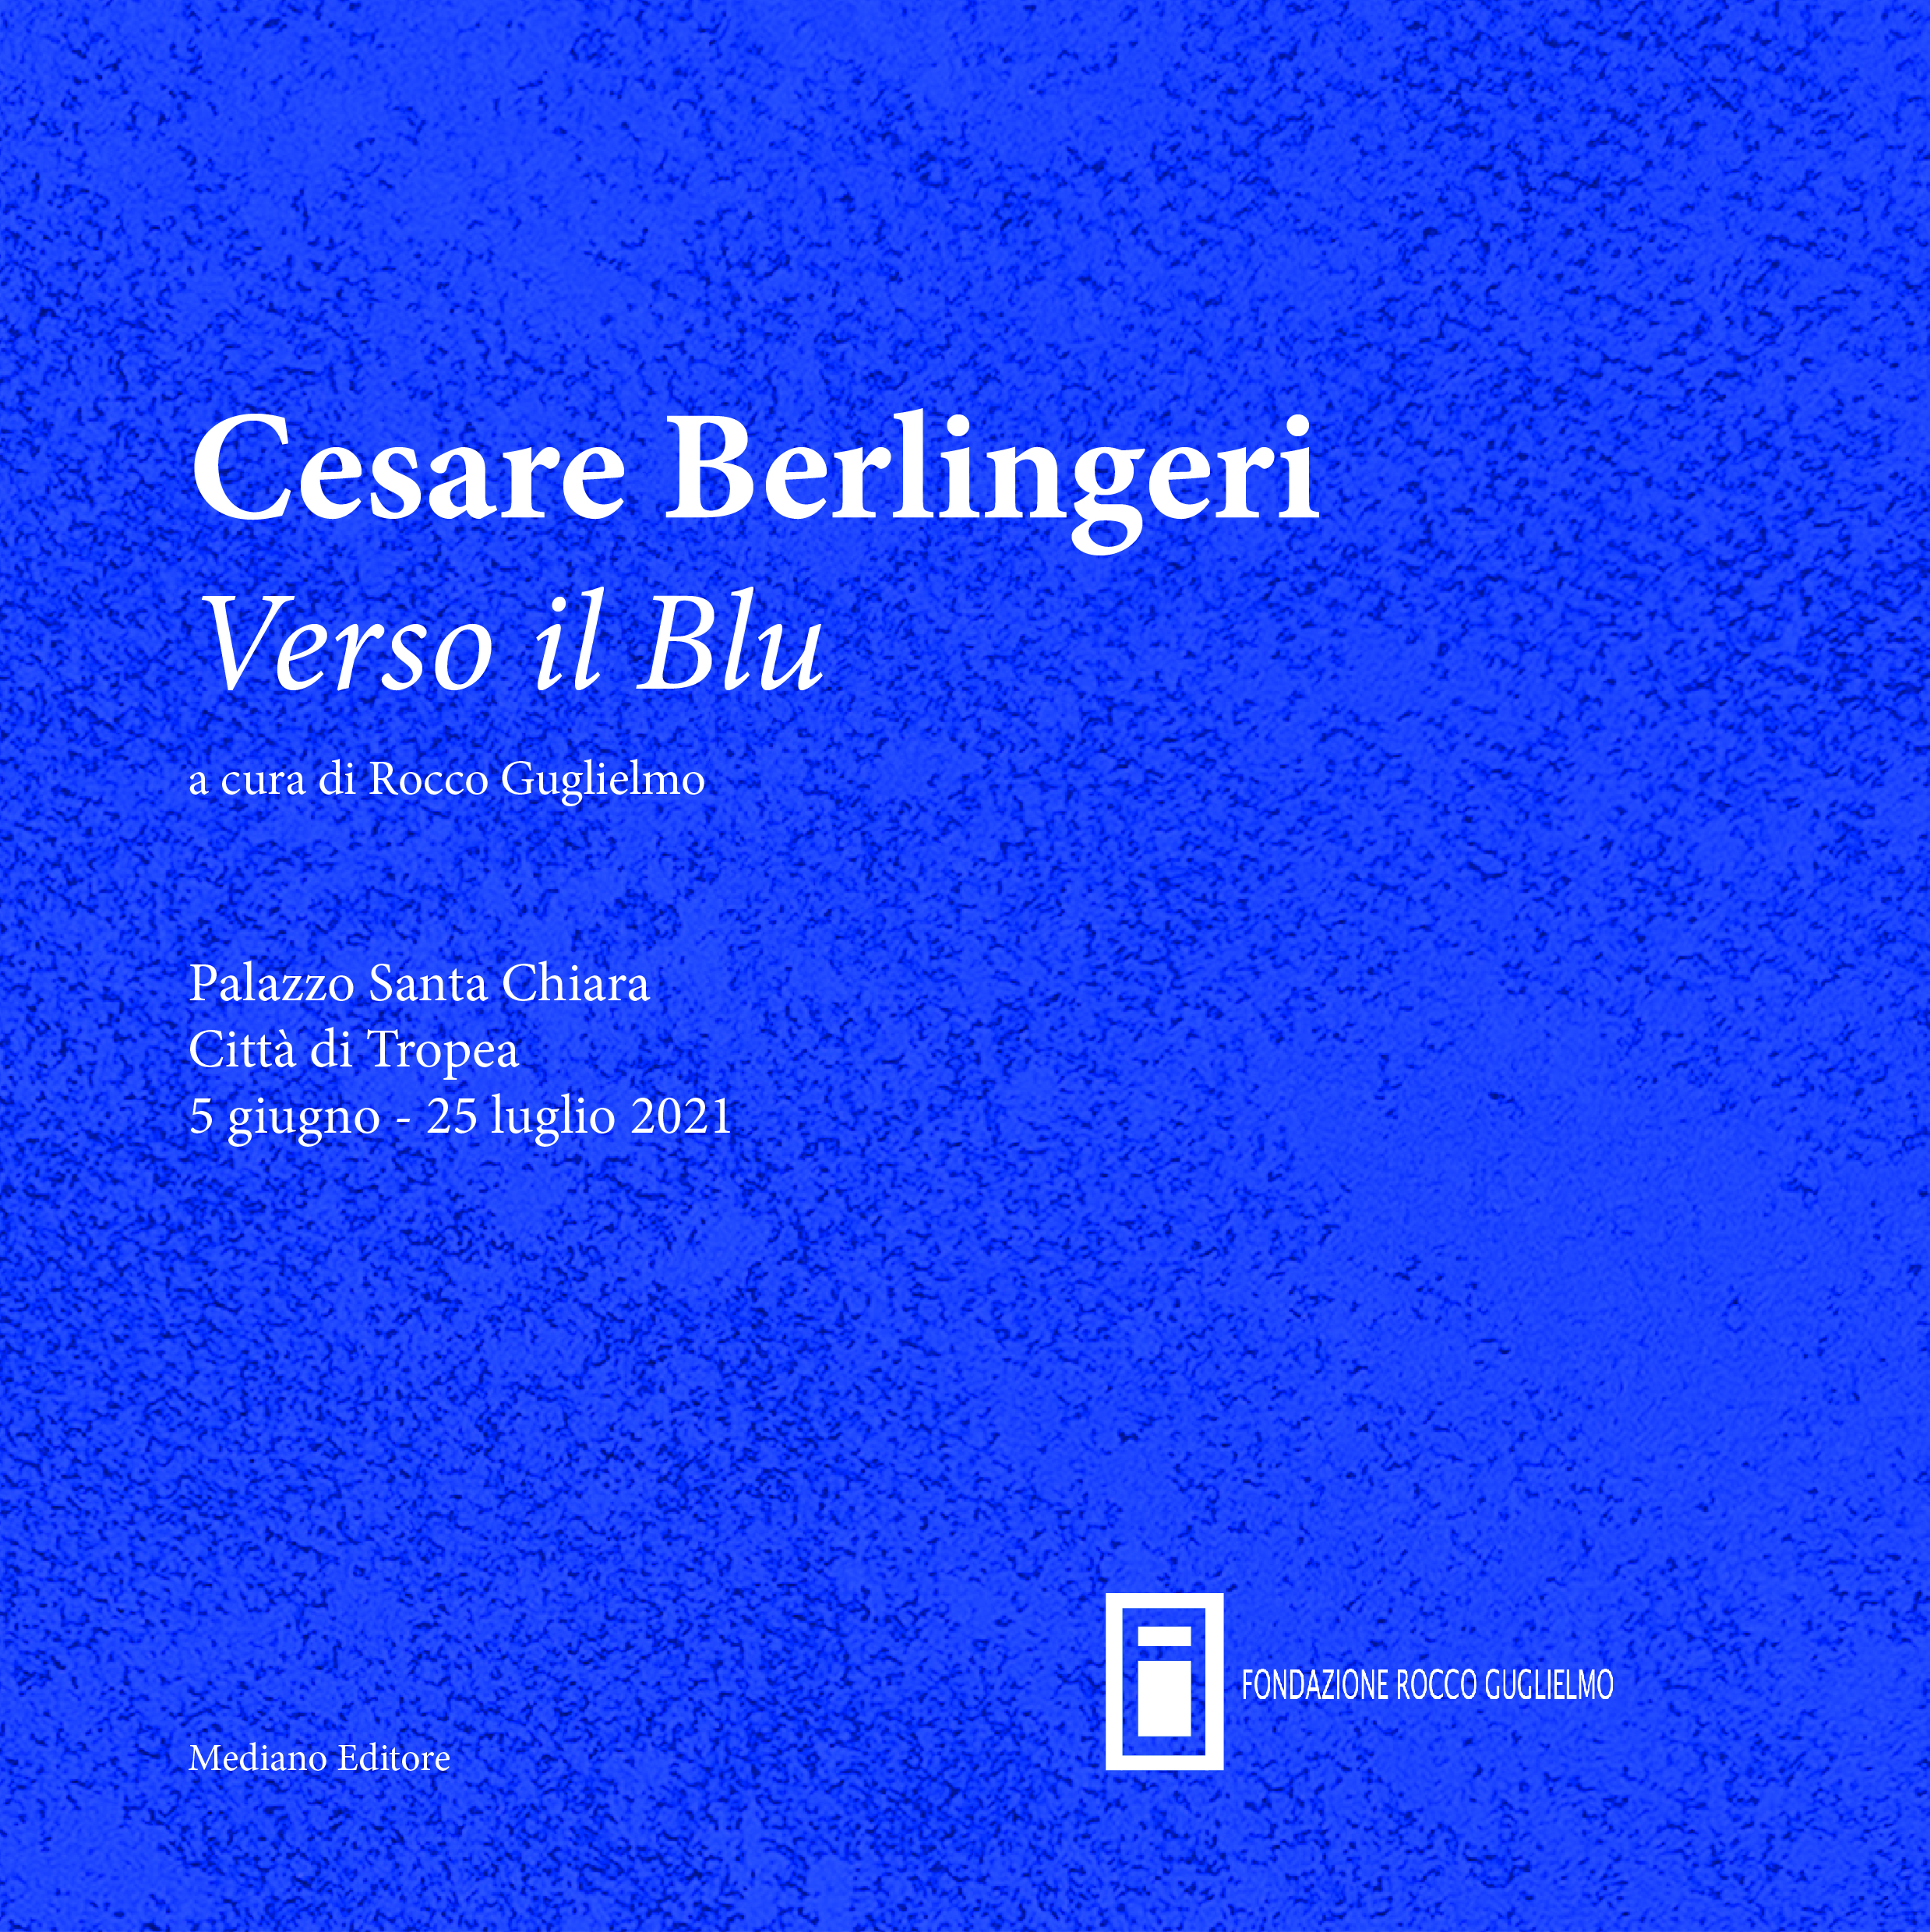 Cesare Berlingeri Mostra Verso il Blu